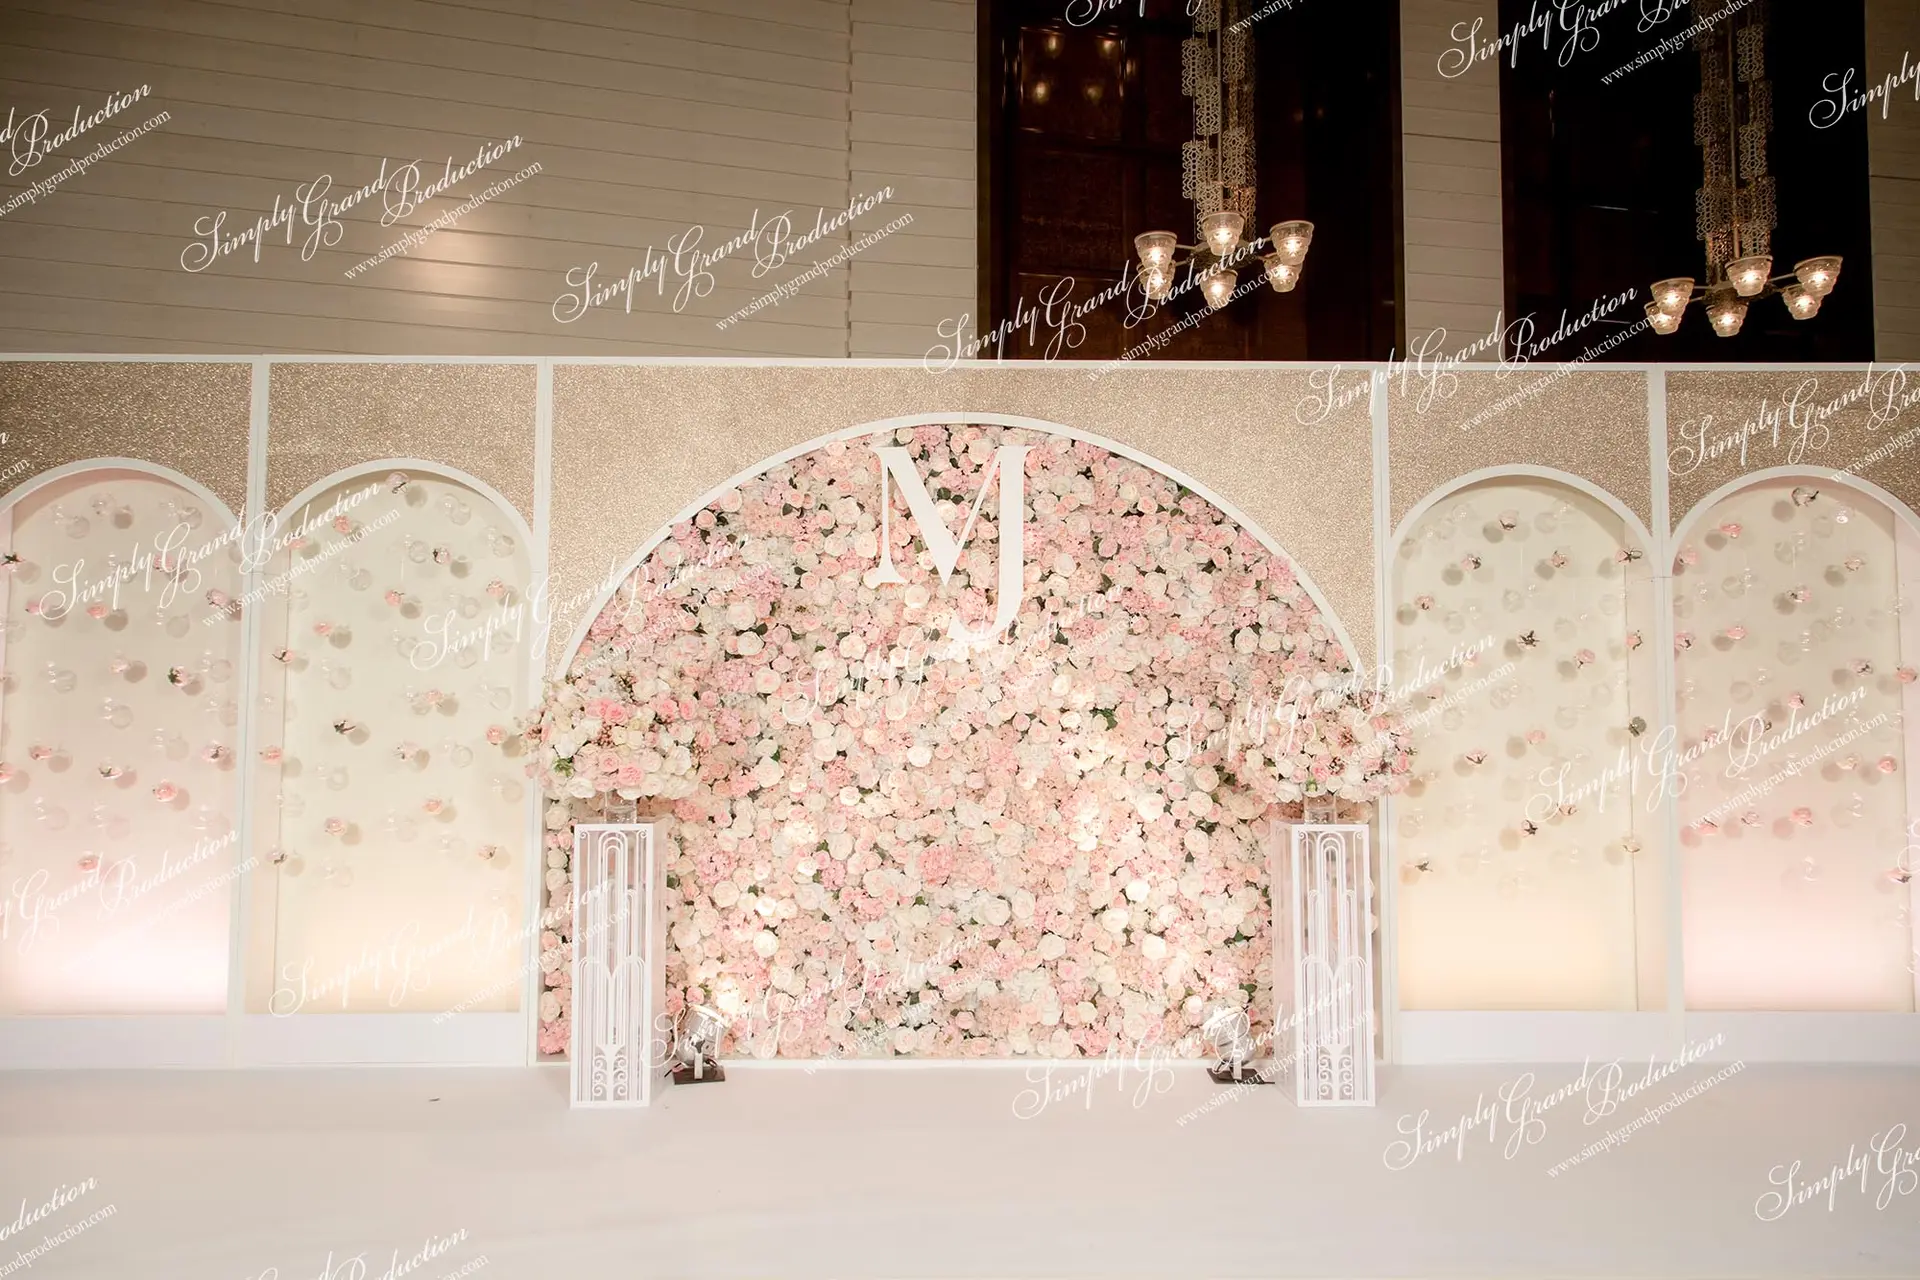 Simply_Grand_Production_wedding_decoration_foyer_weddingidea_pastel_ivory_pink_Four_Seasons_1_3